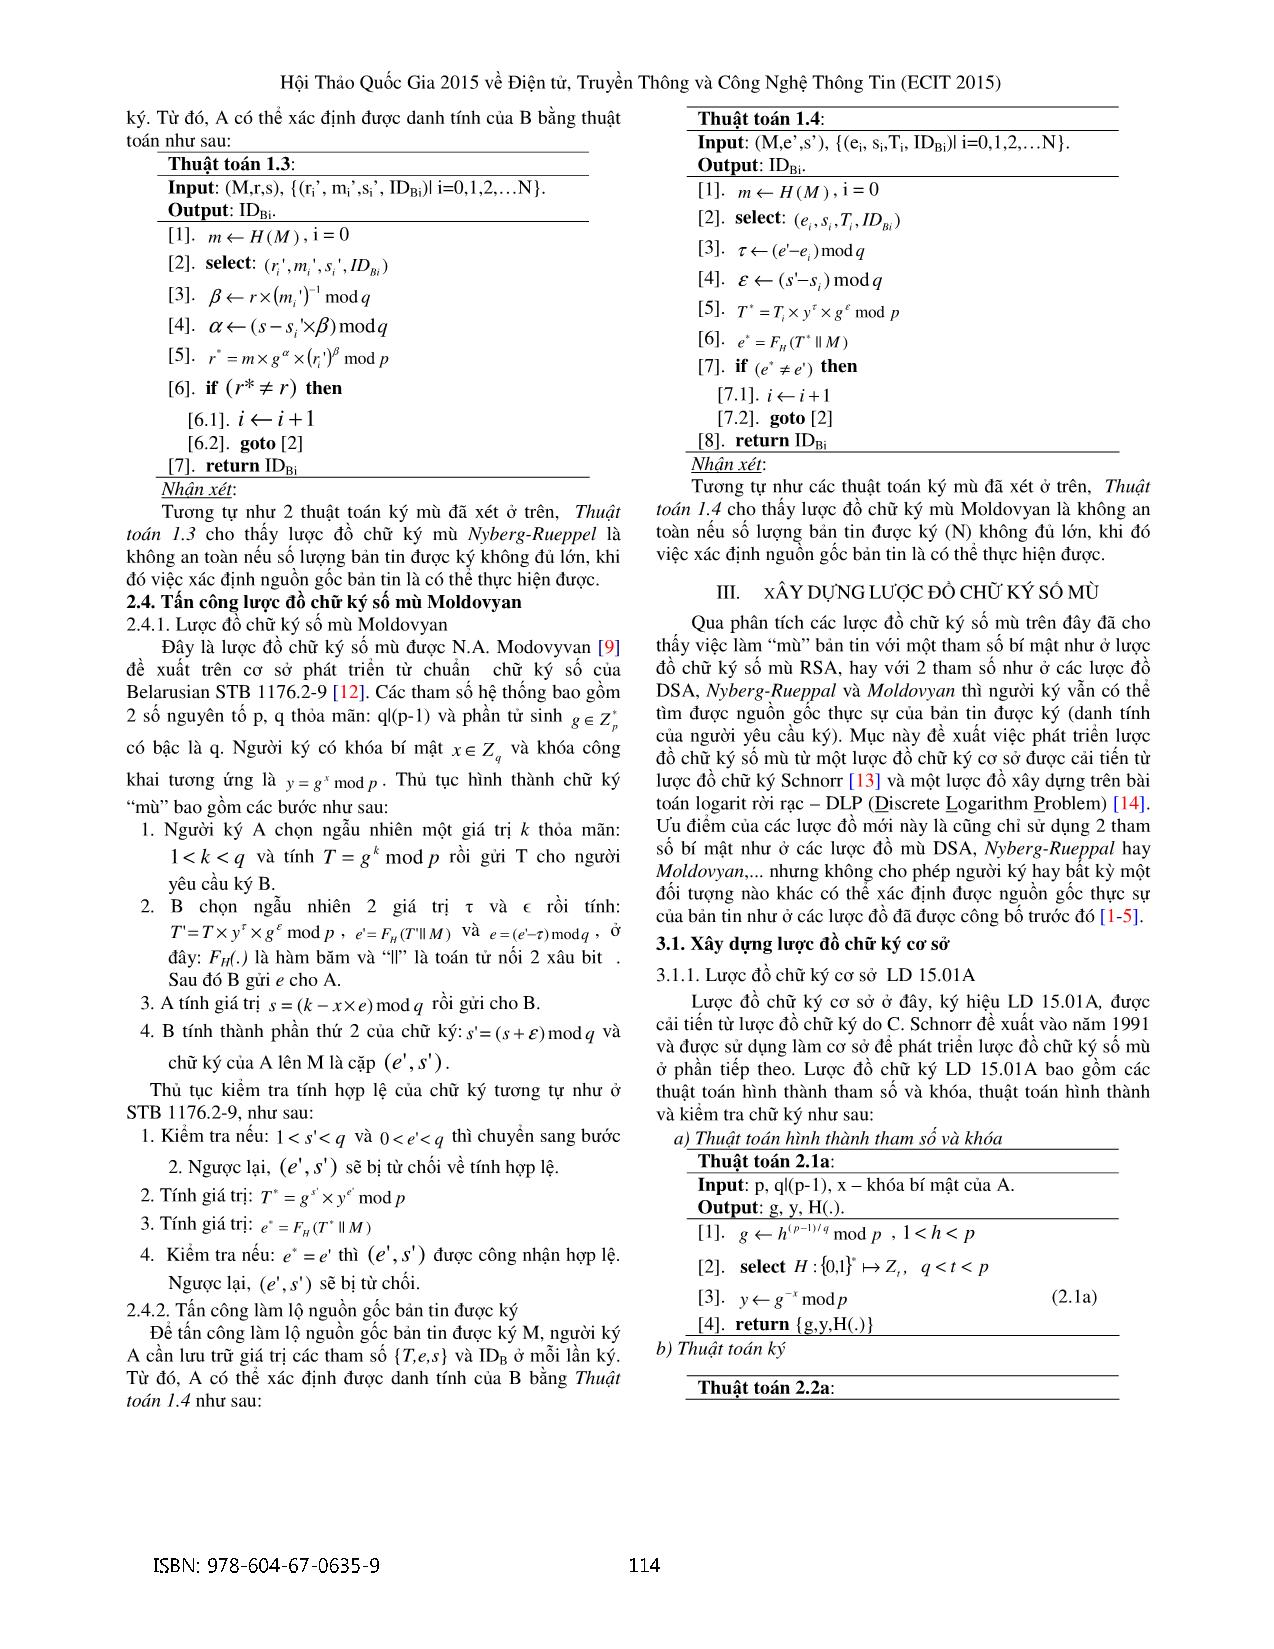 Phát triển lược đồ chữ ký số mù trang 3